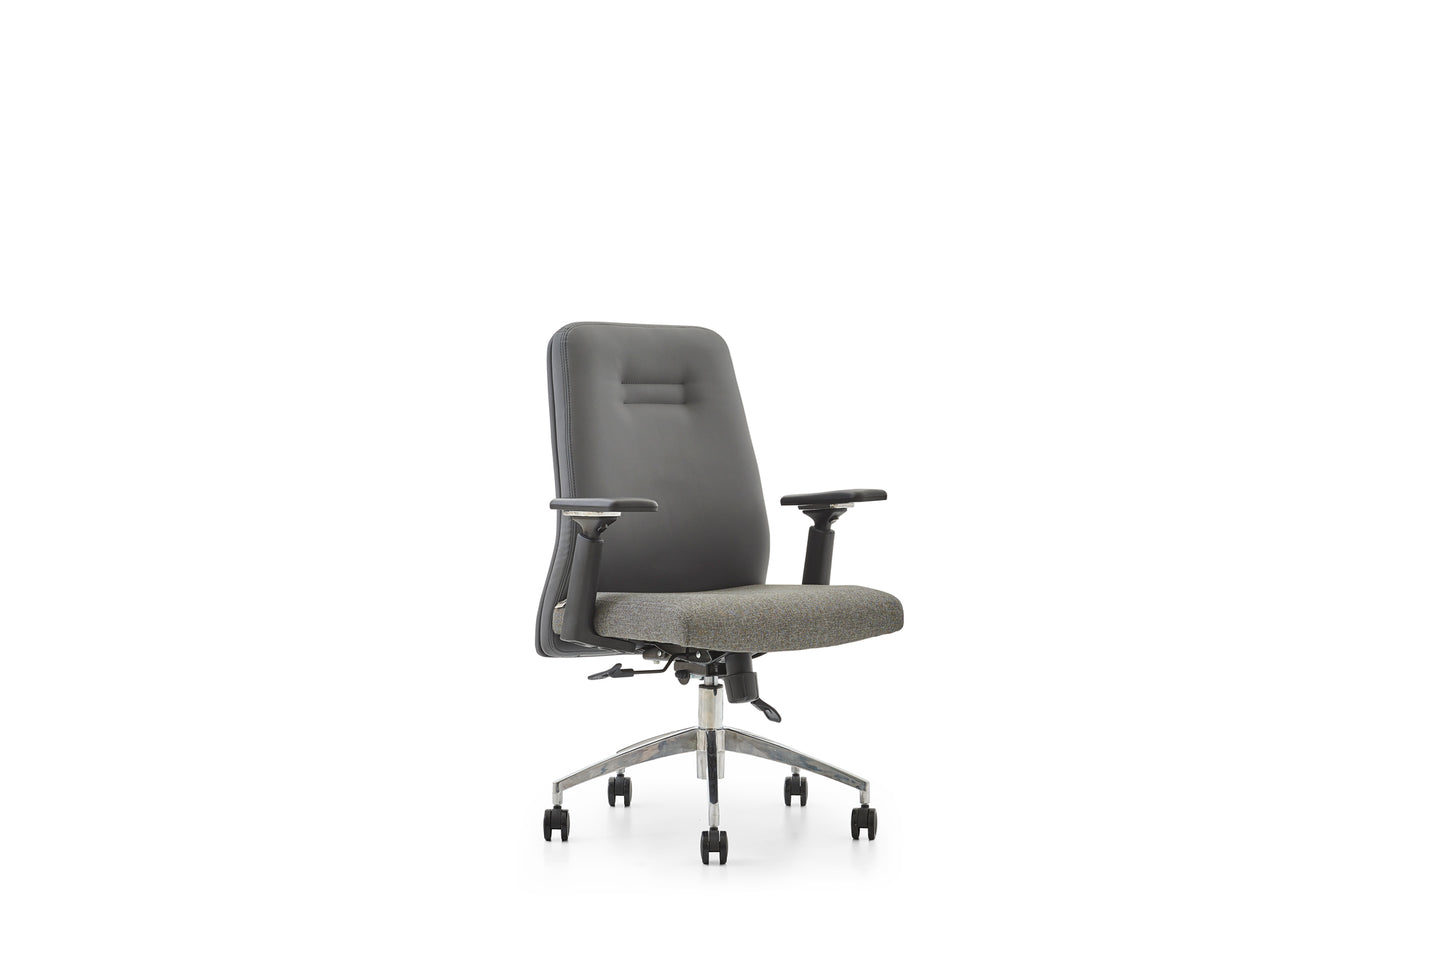 Meet Office Chair